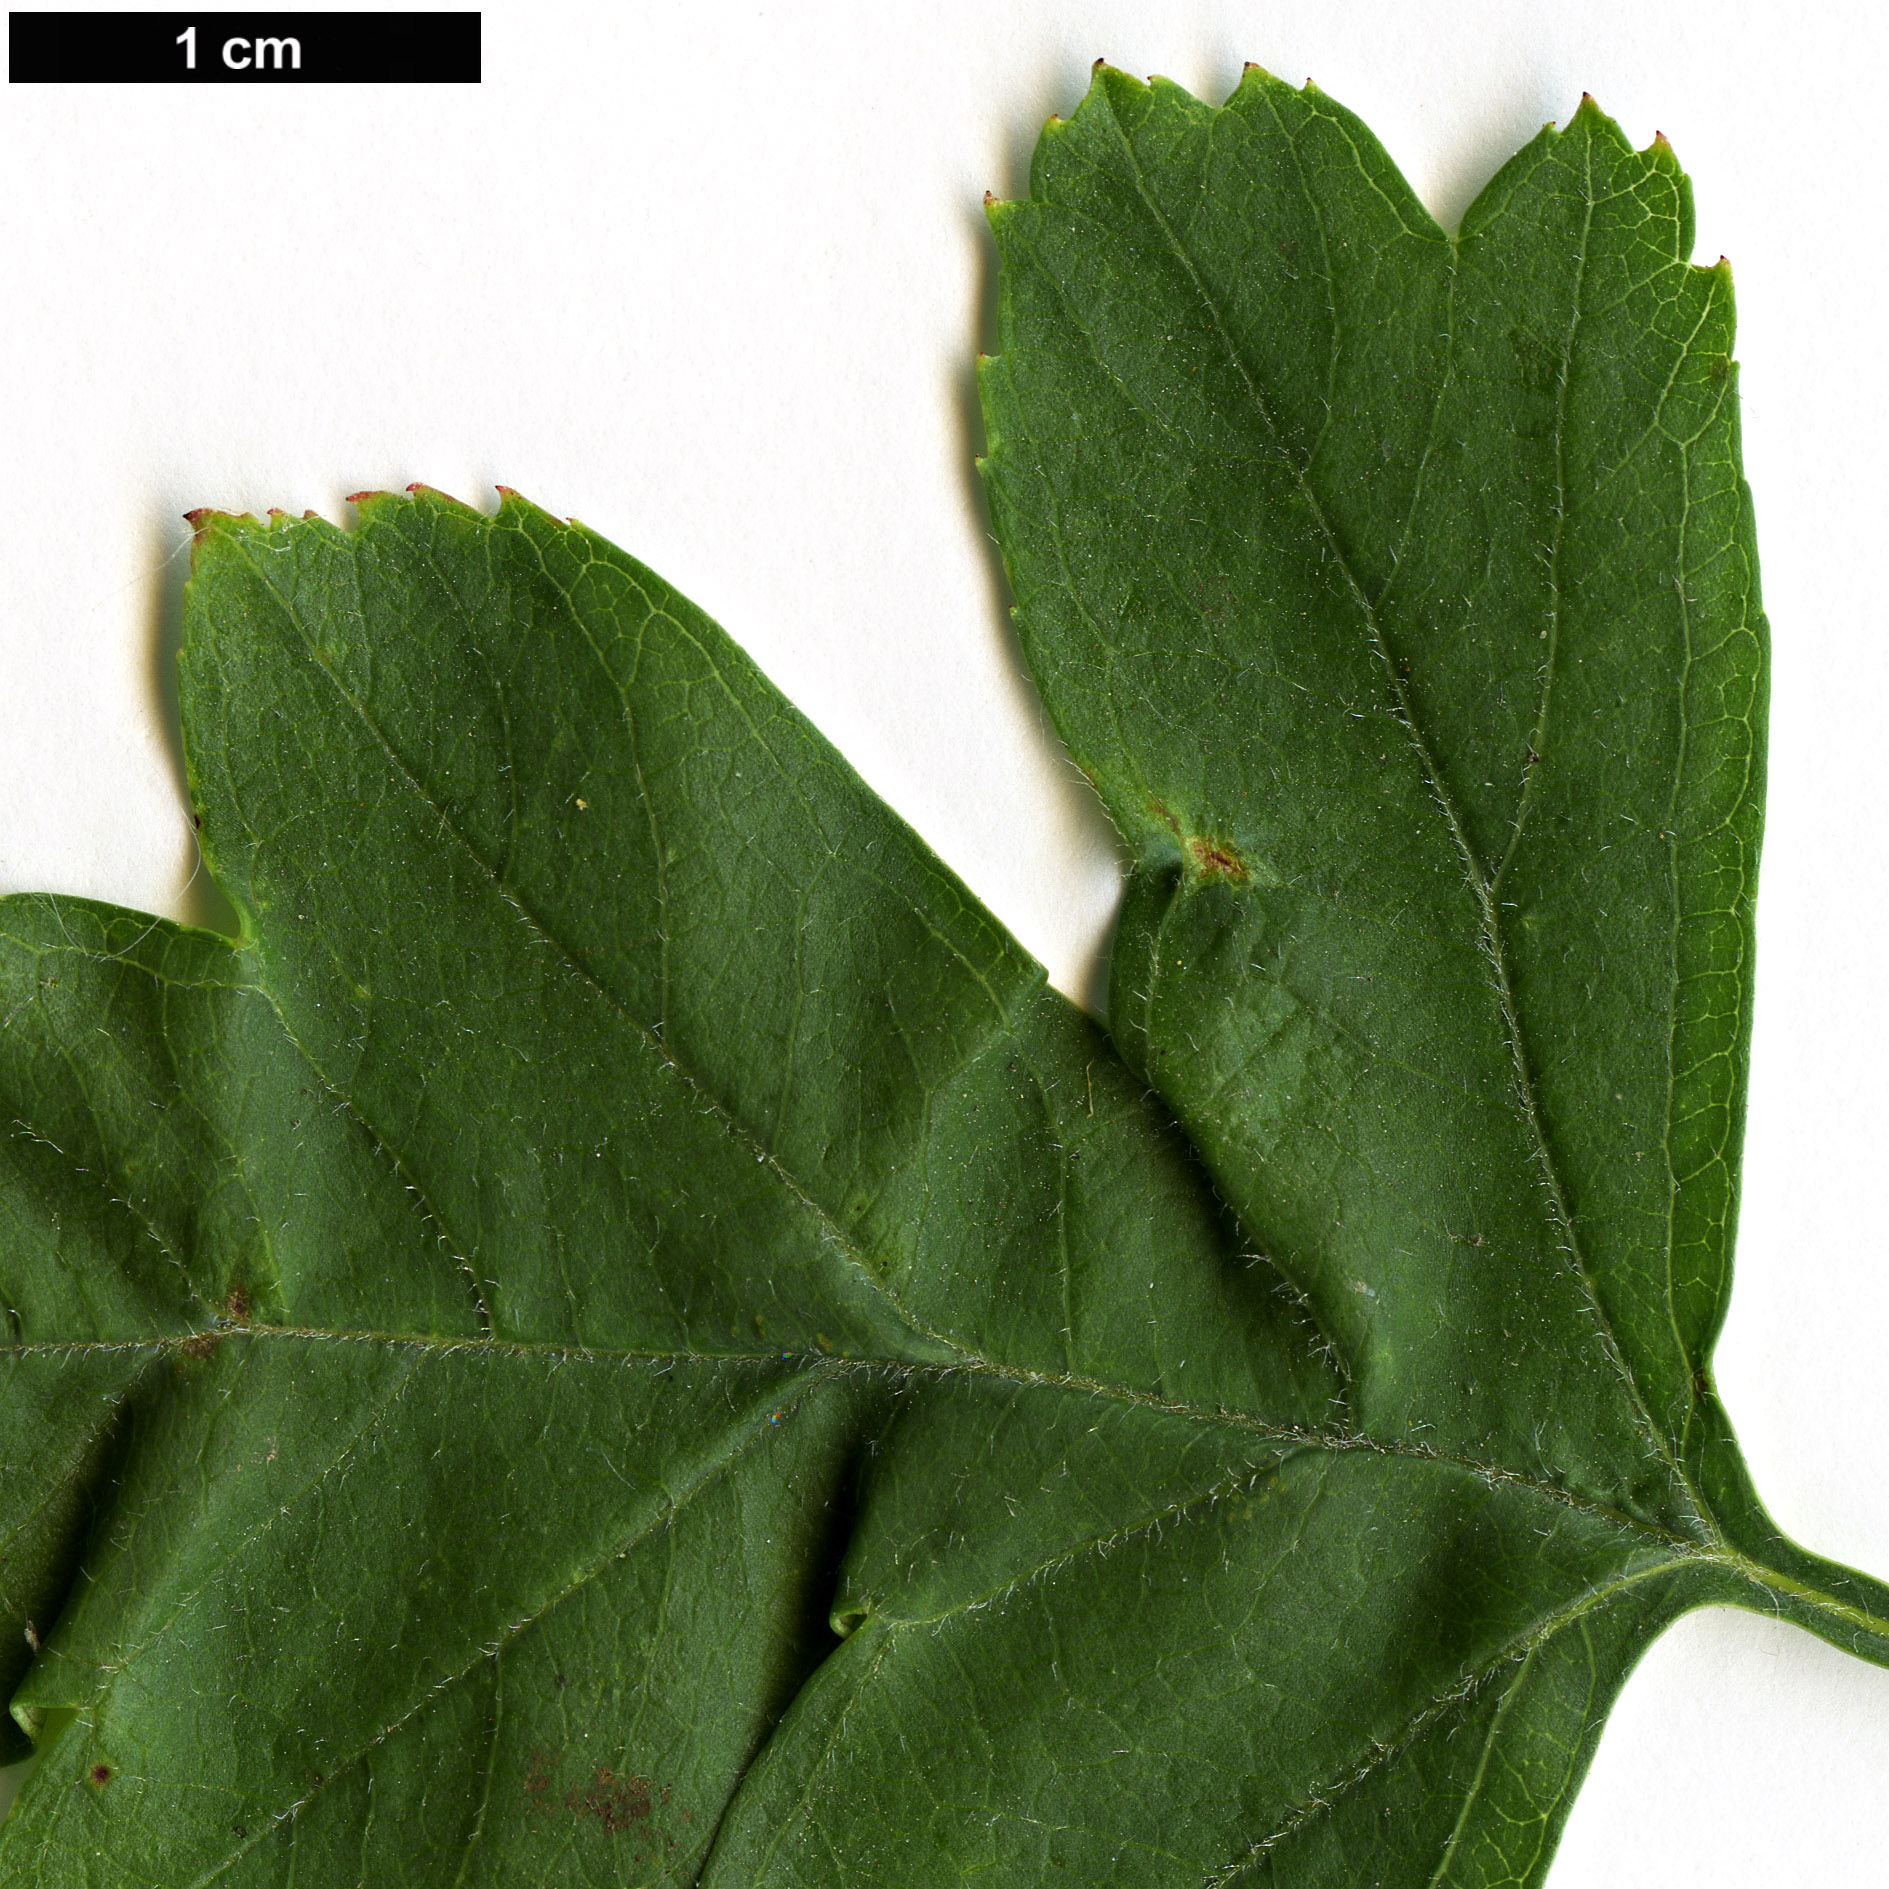 High resolution image: Family: Rosaceae - Genus: Crataegus - Taxon: ×calycina (C.laevigata × C.rhipidophylla)